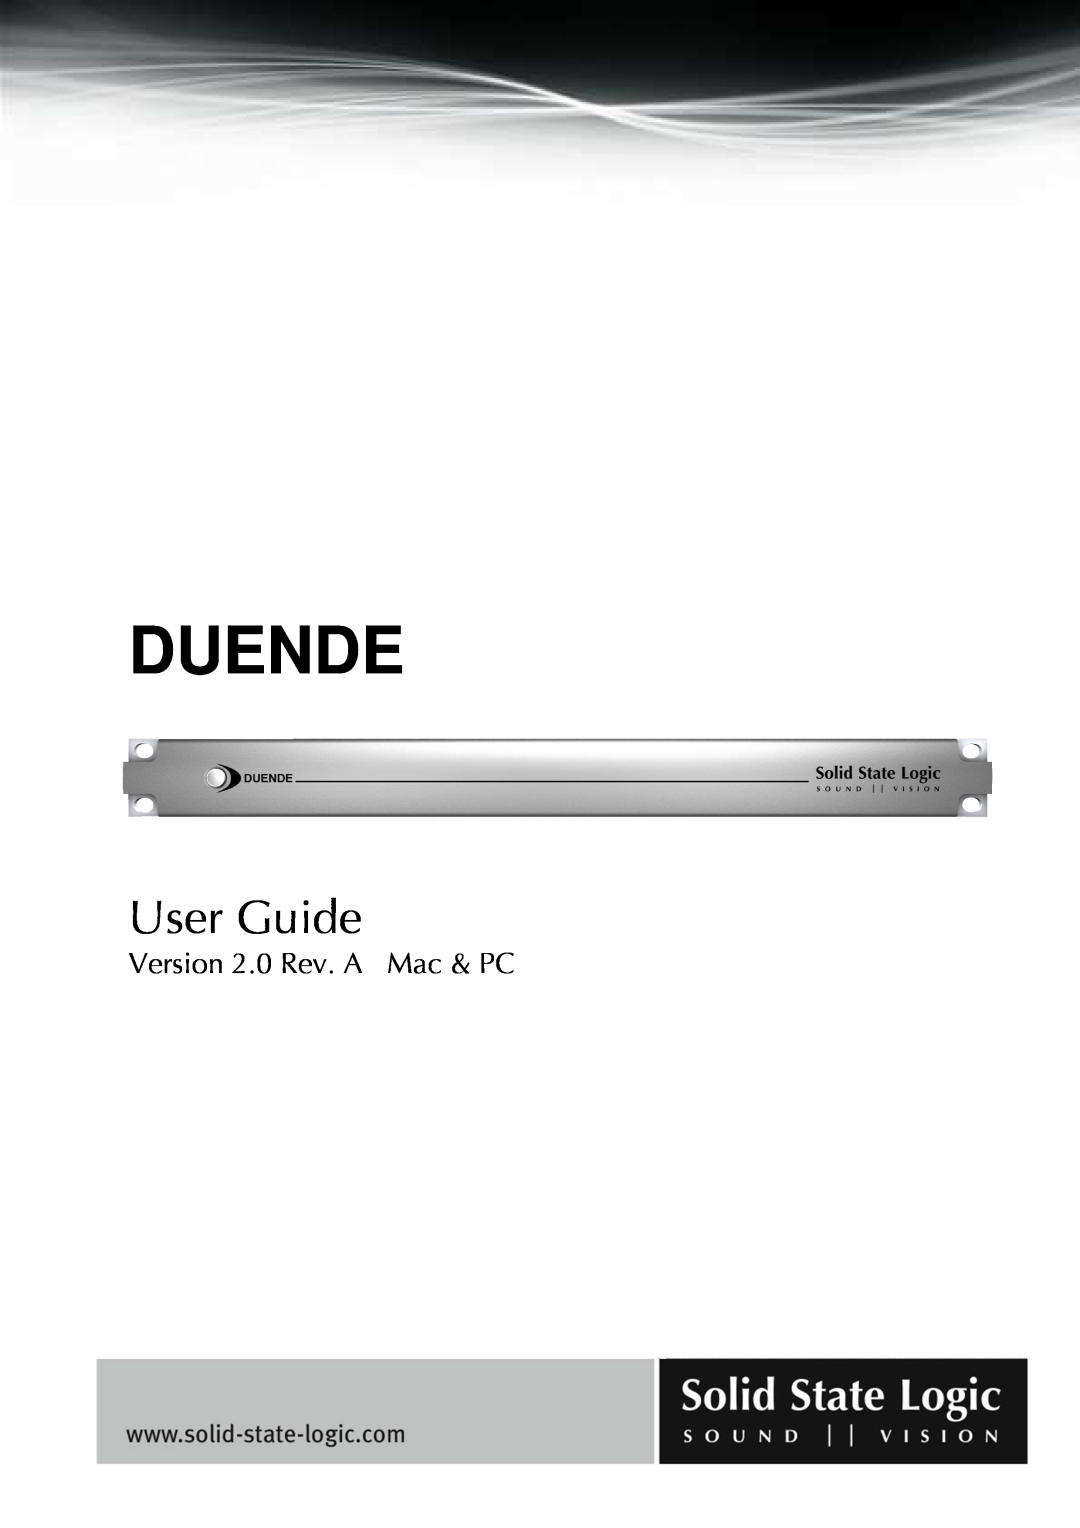 Solid State Logic DUENDE manual Version 2.0 Rev. A Mac & PC, Duende, User Guide 